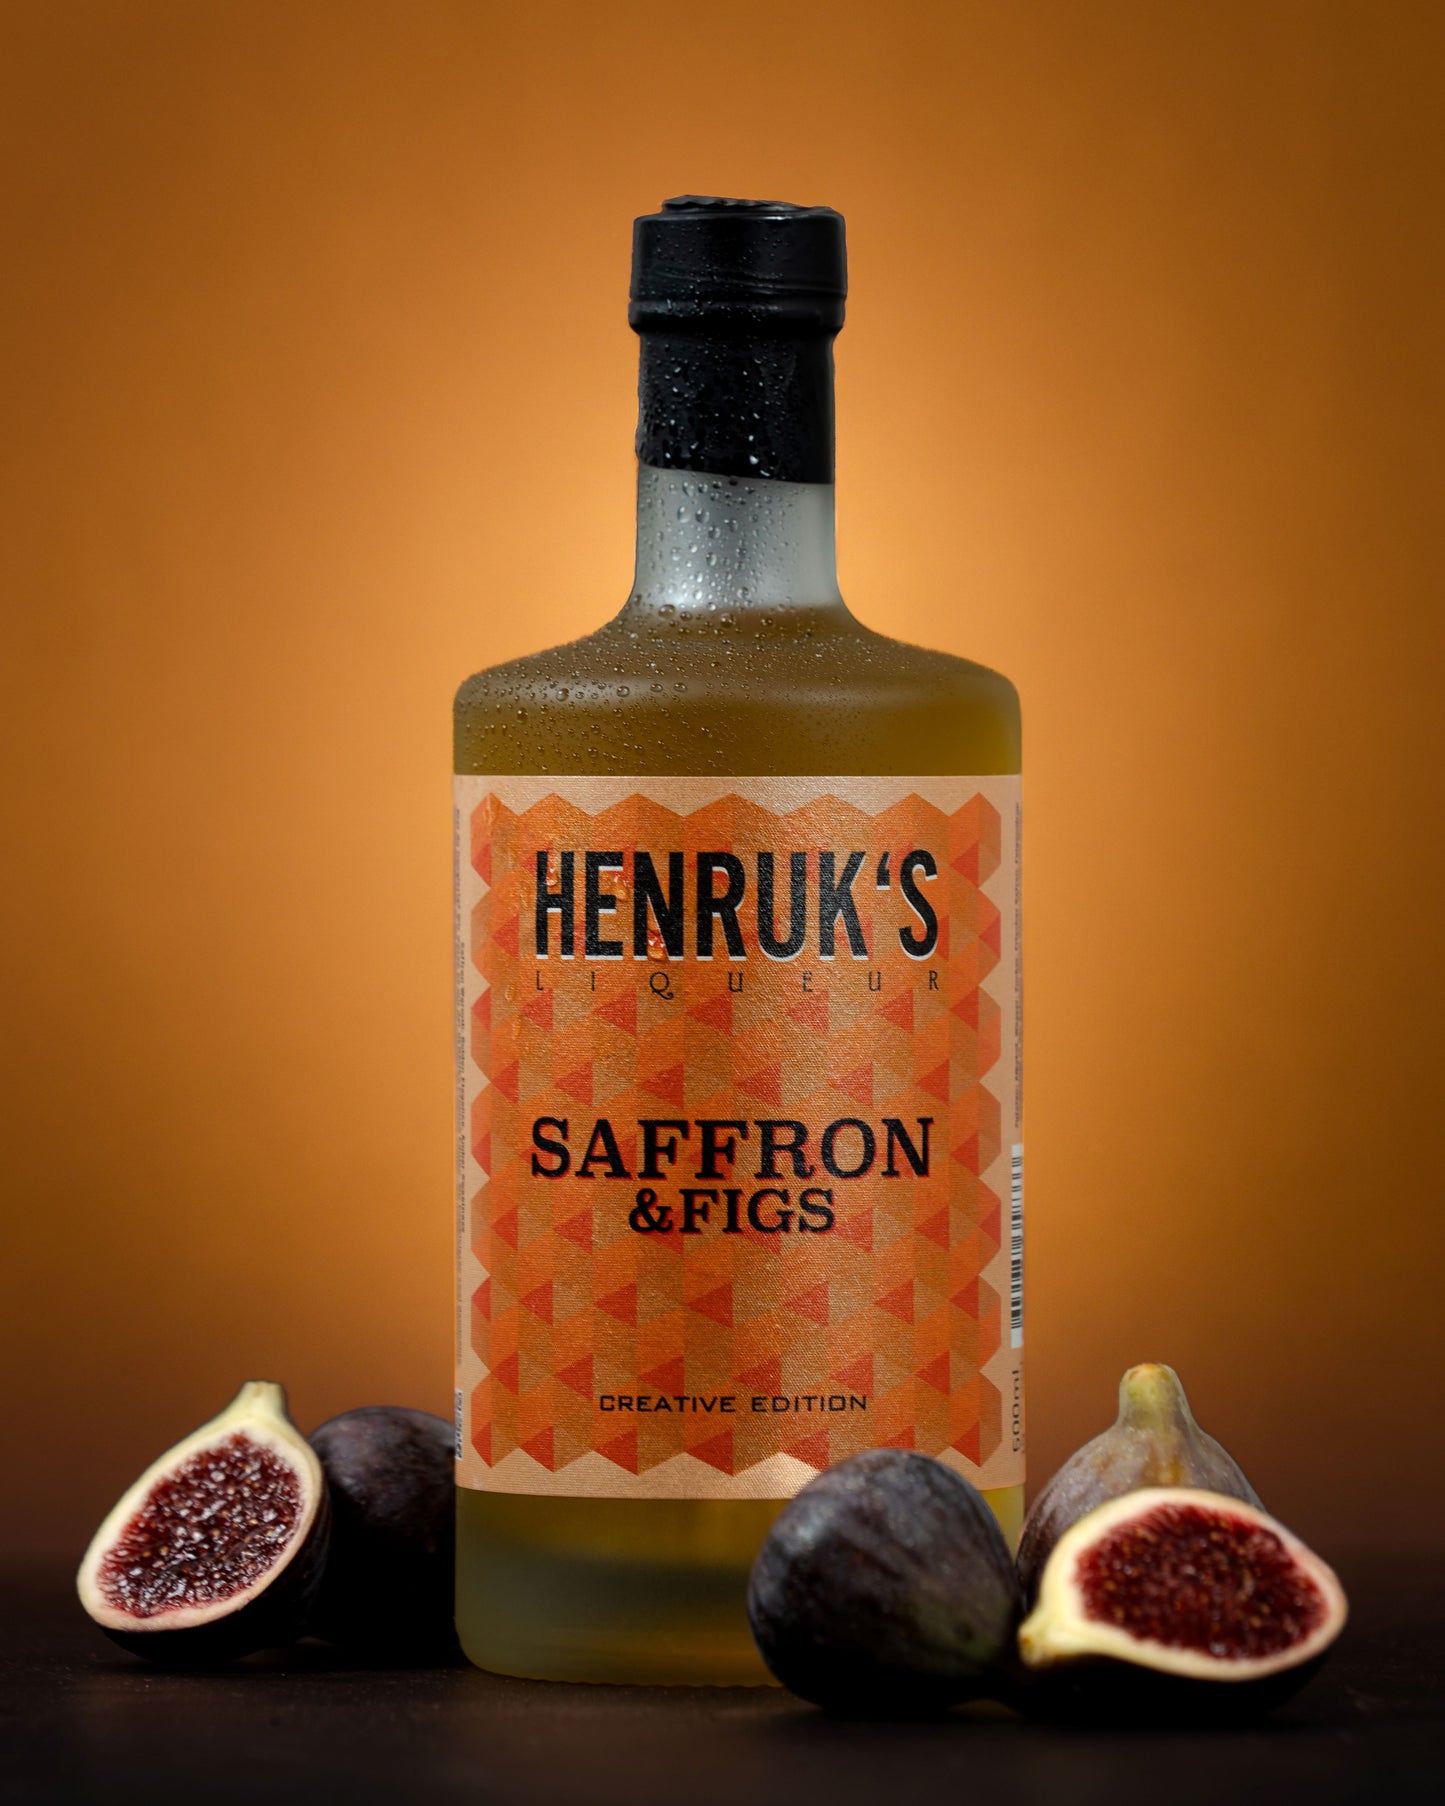 HENRUK's saffron & figs "creative edition"